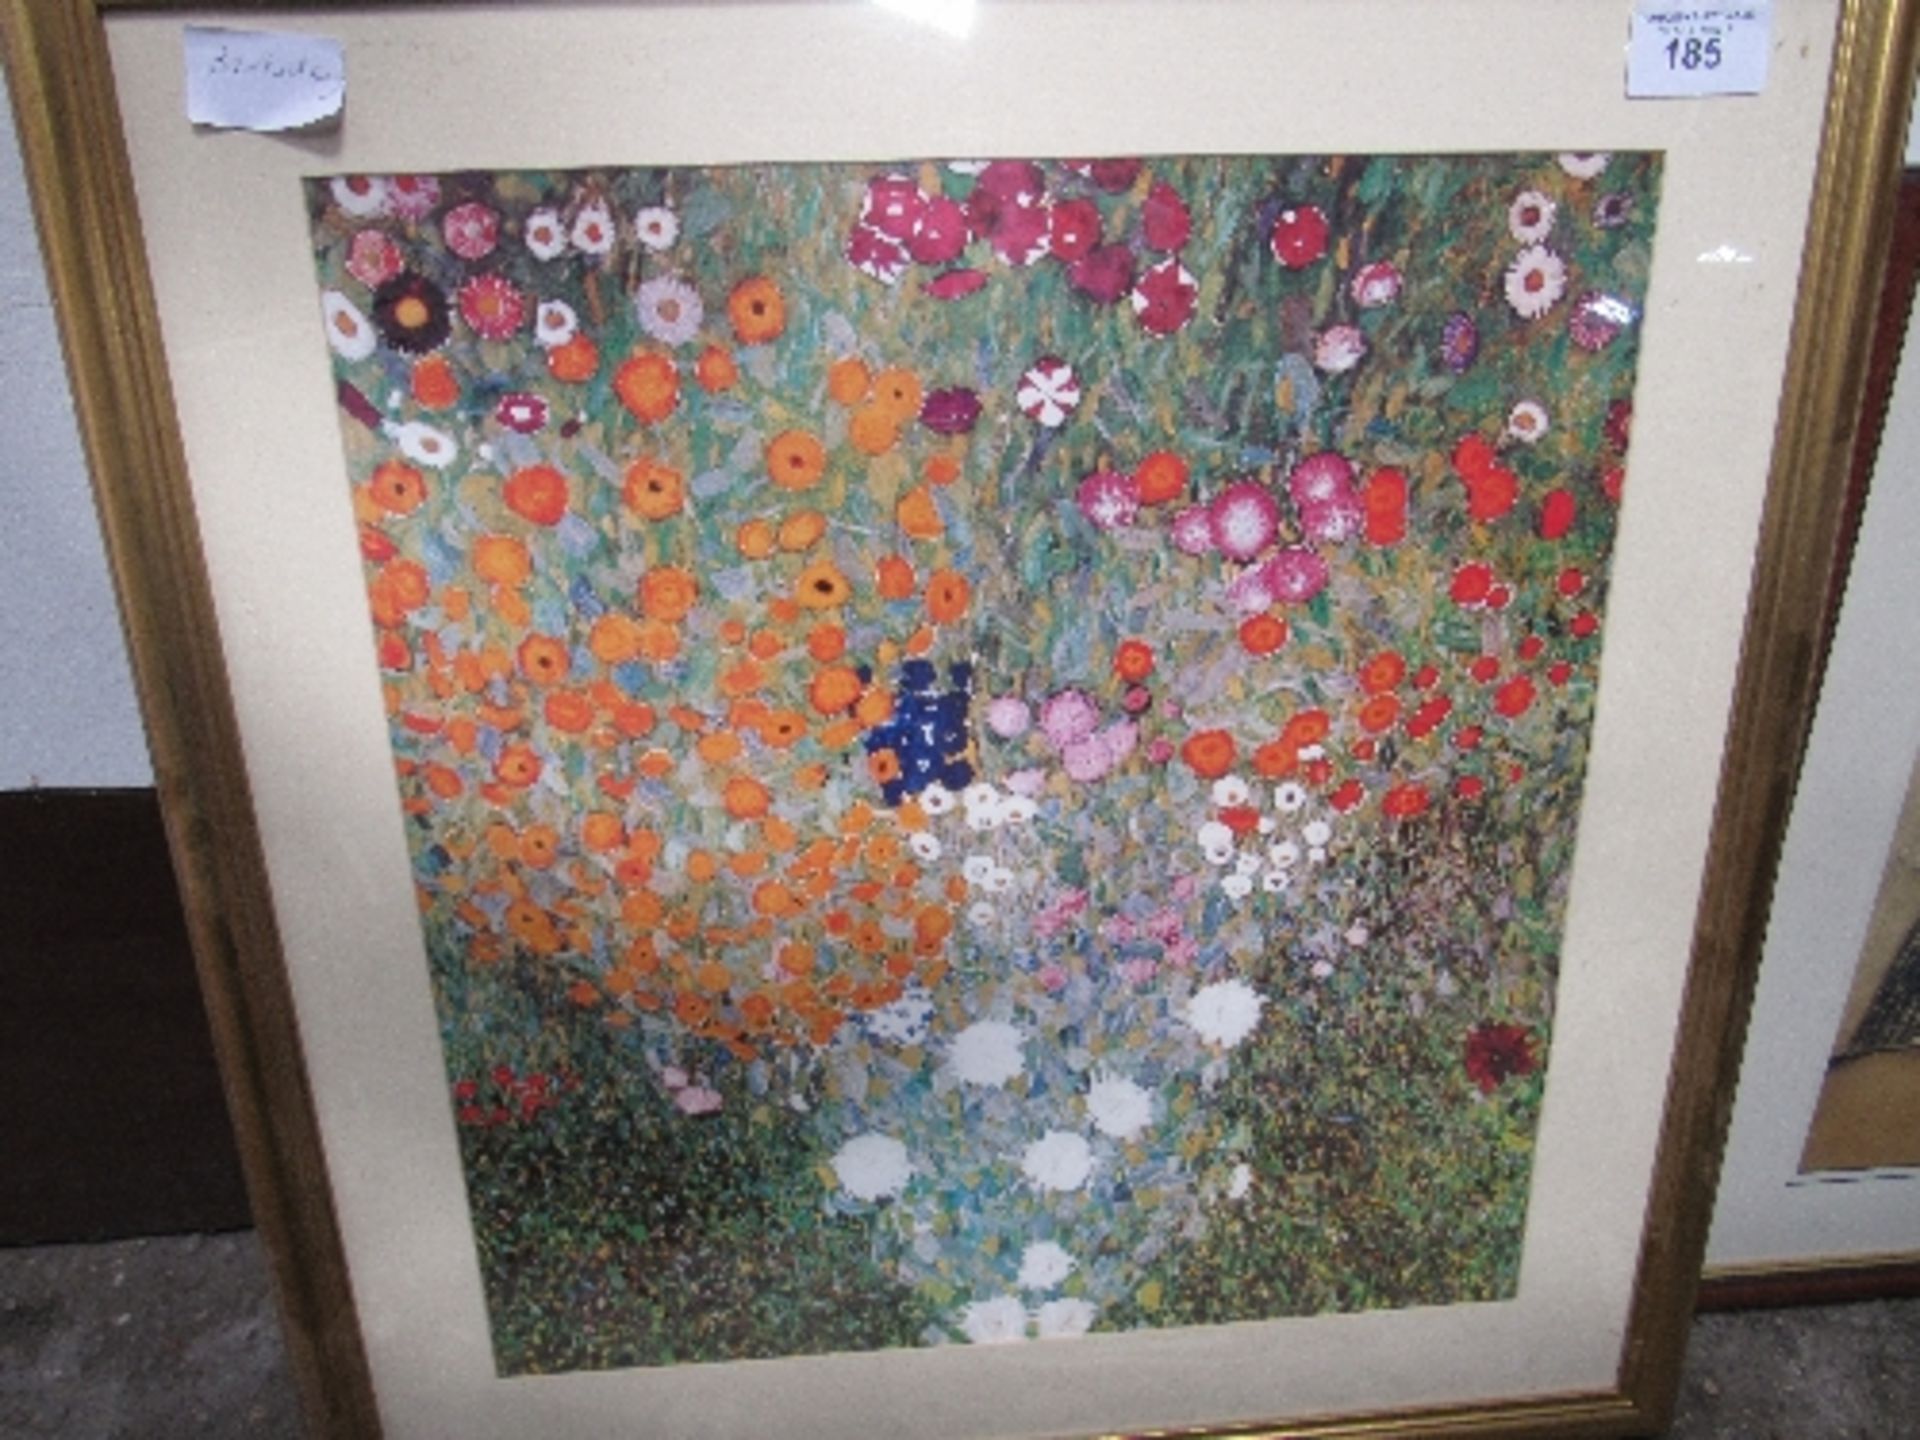 Framed & glazed floral Klimt print, 83cms x 86cms. Estimate £10-20.